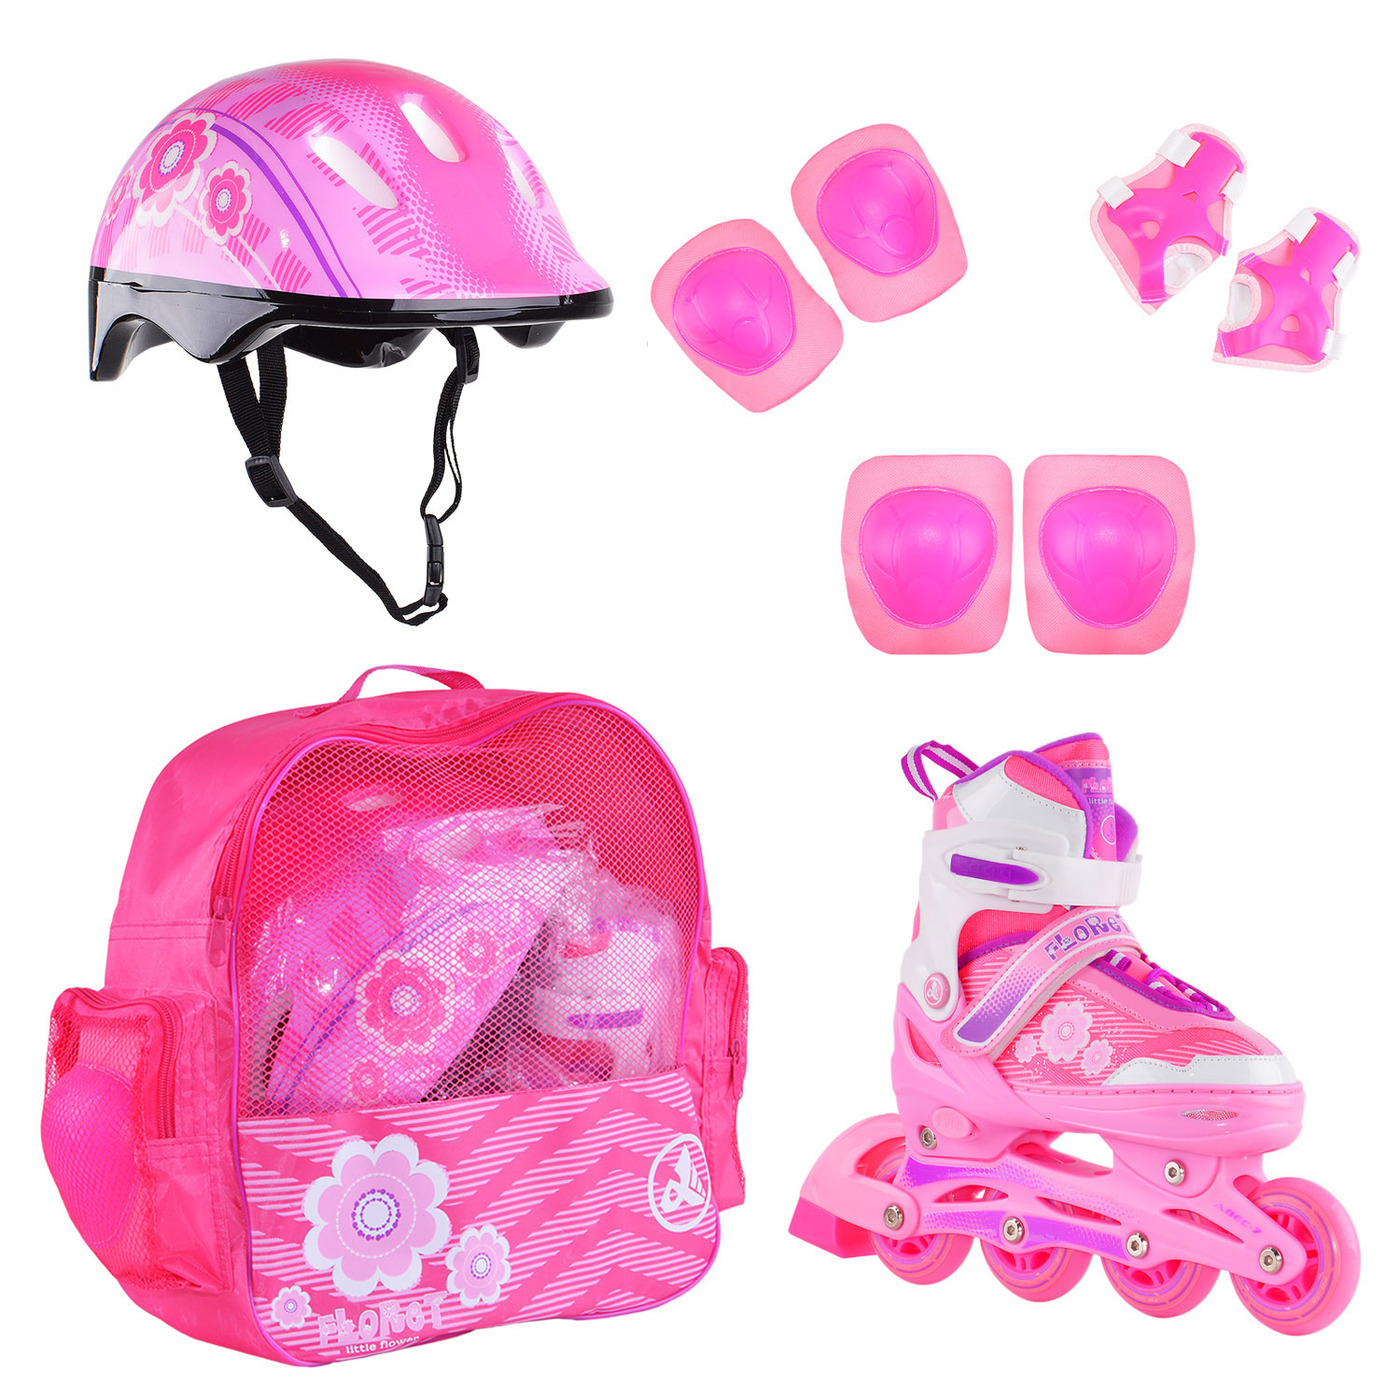 Раздвижные роликовые коньки Alpha Caprice FLORET Wh/Pink/Viol шлем, защита, сумка M:35-38 коньки ледовые раздвижные larsen glide pink white l 39 42